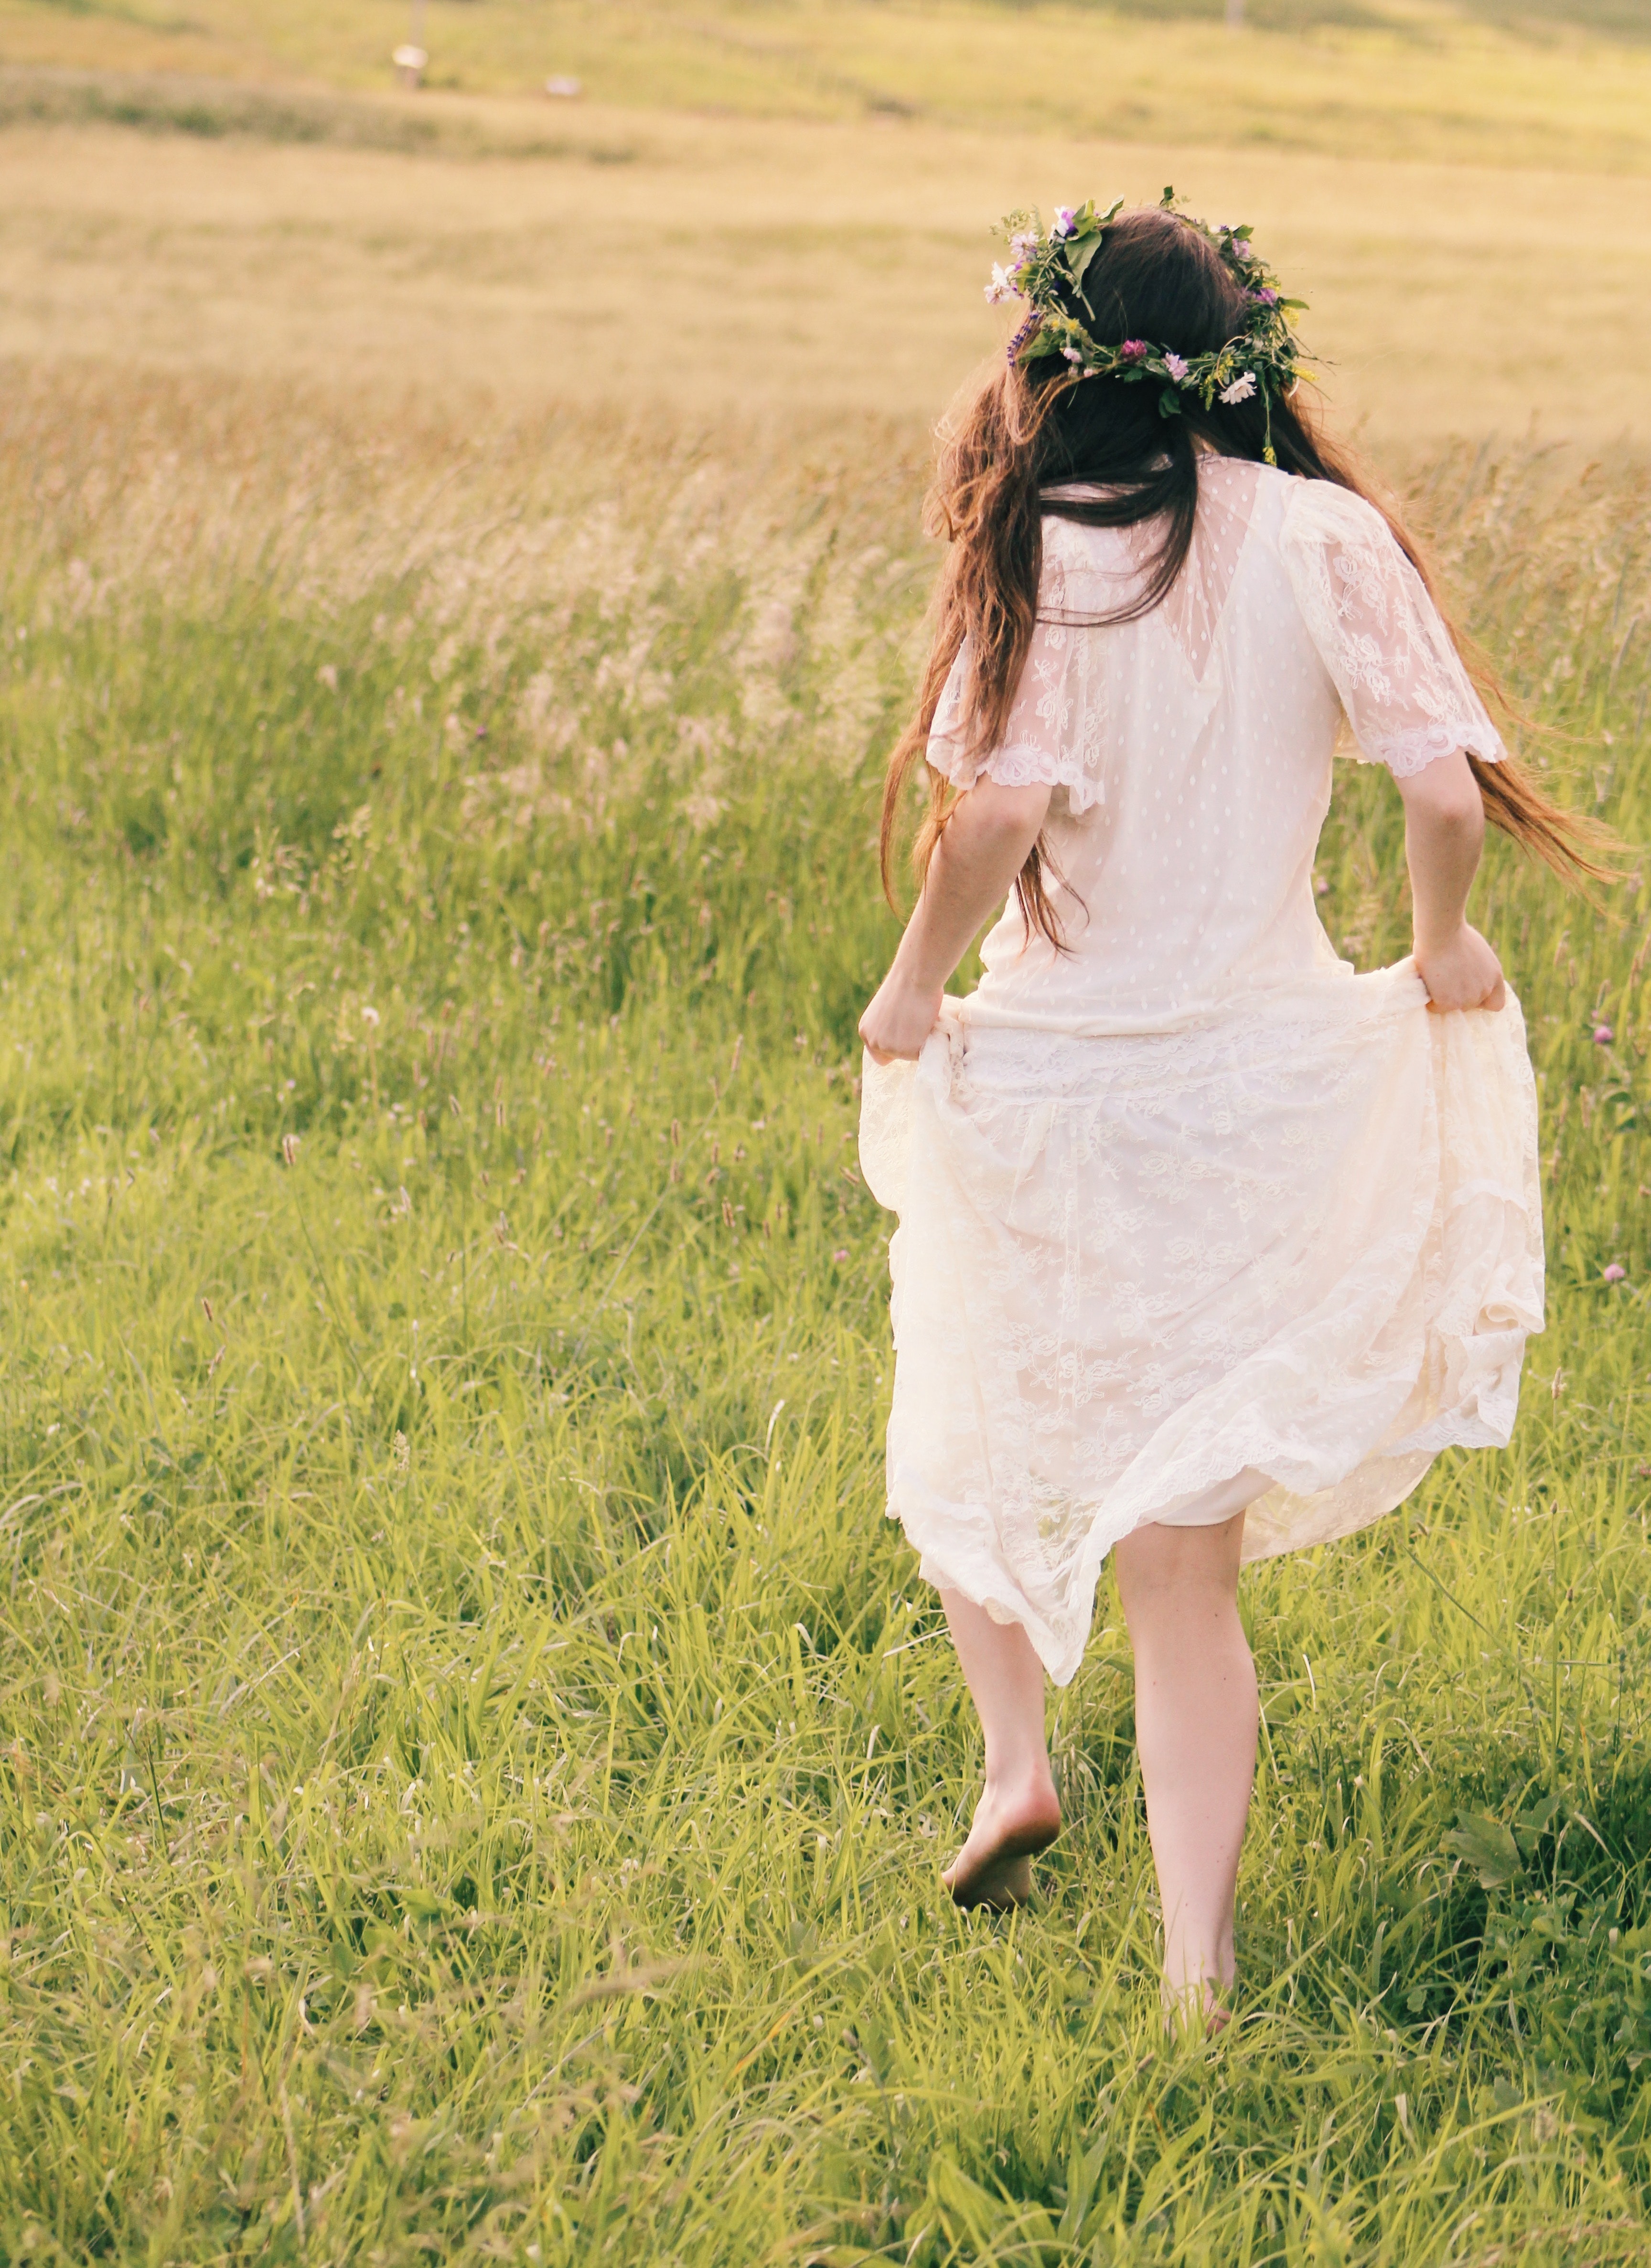 Woman wearing white floral dress photo